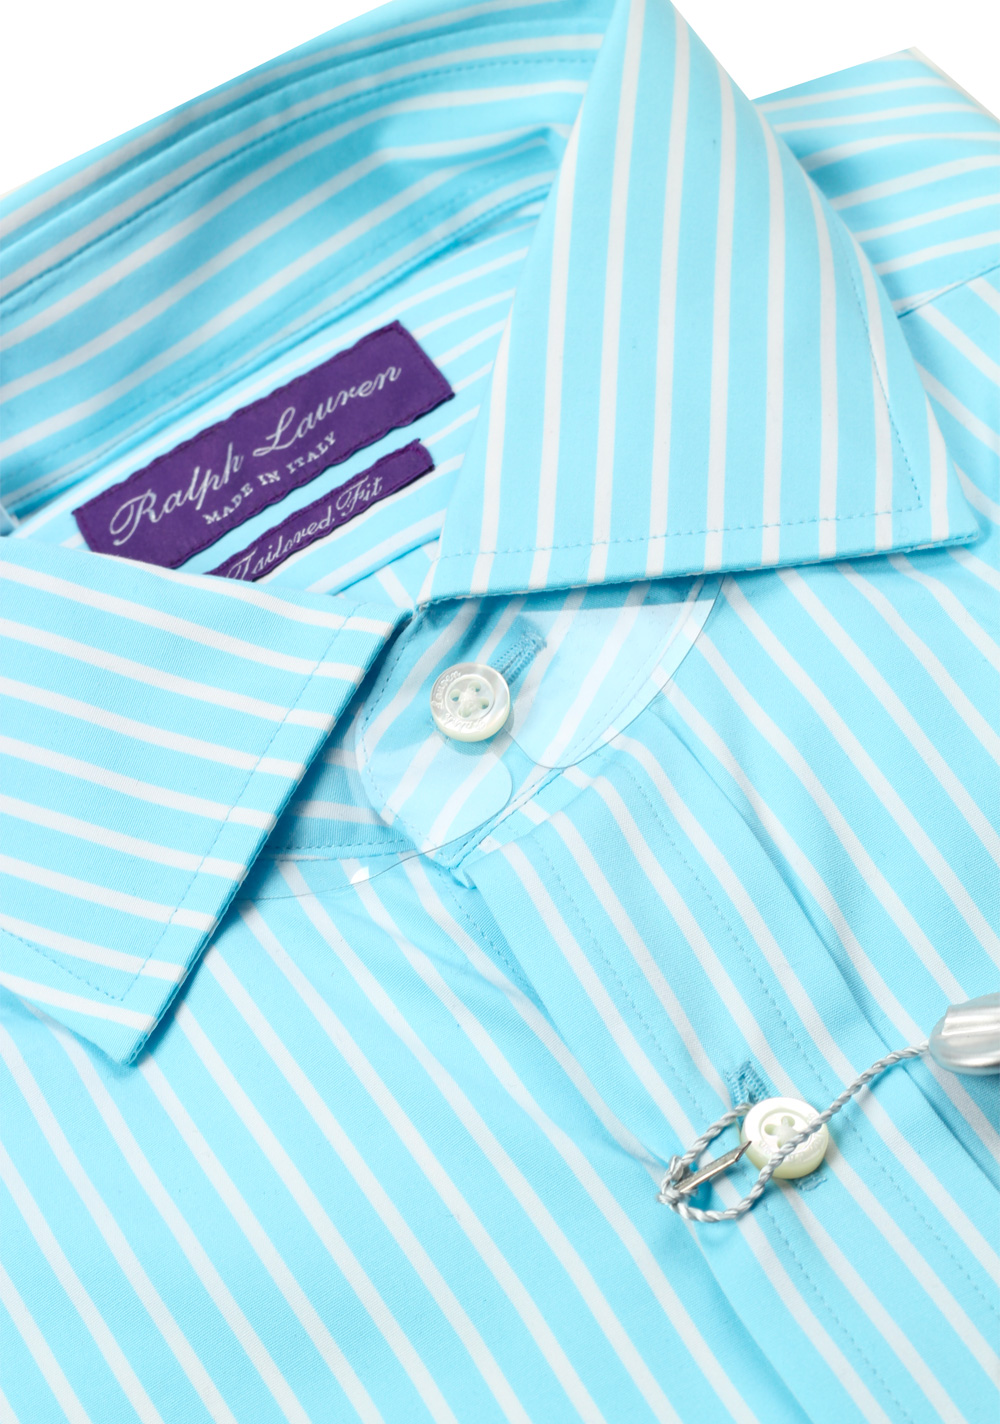 Ralph Lauren Purple Label Turquoise Striped Tailored Fit Shirt Size 38 / 15 U.S. | Costume Limité